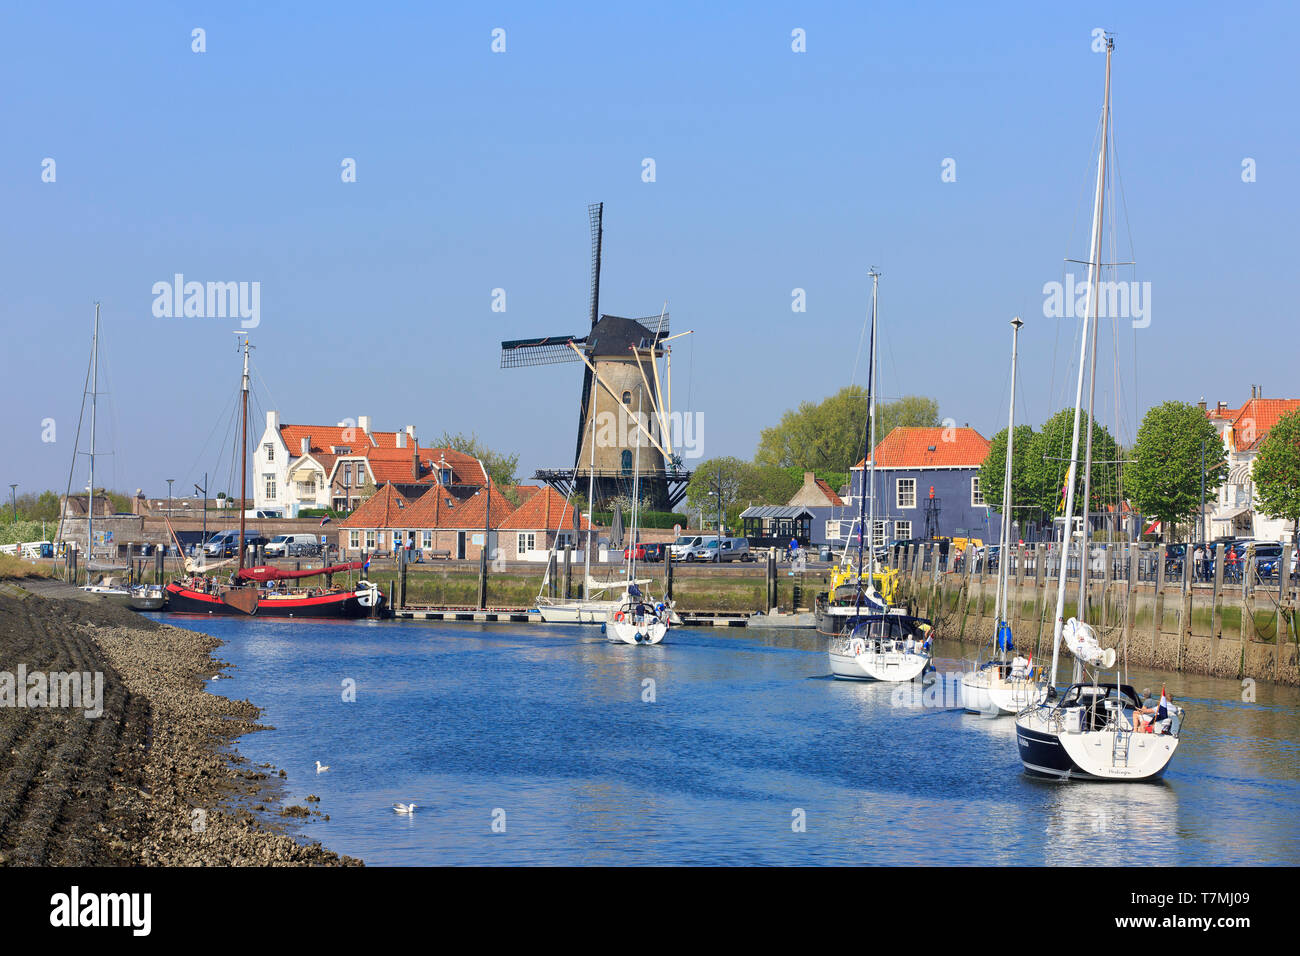 Yachts, sur leur façon de l'Escaut oriental, voile passé le moulin du xviiie siècle 'Den Haas' à partir de 1727 à Zierikzee (225), Pays-Bas Banque D'Images